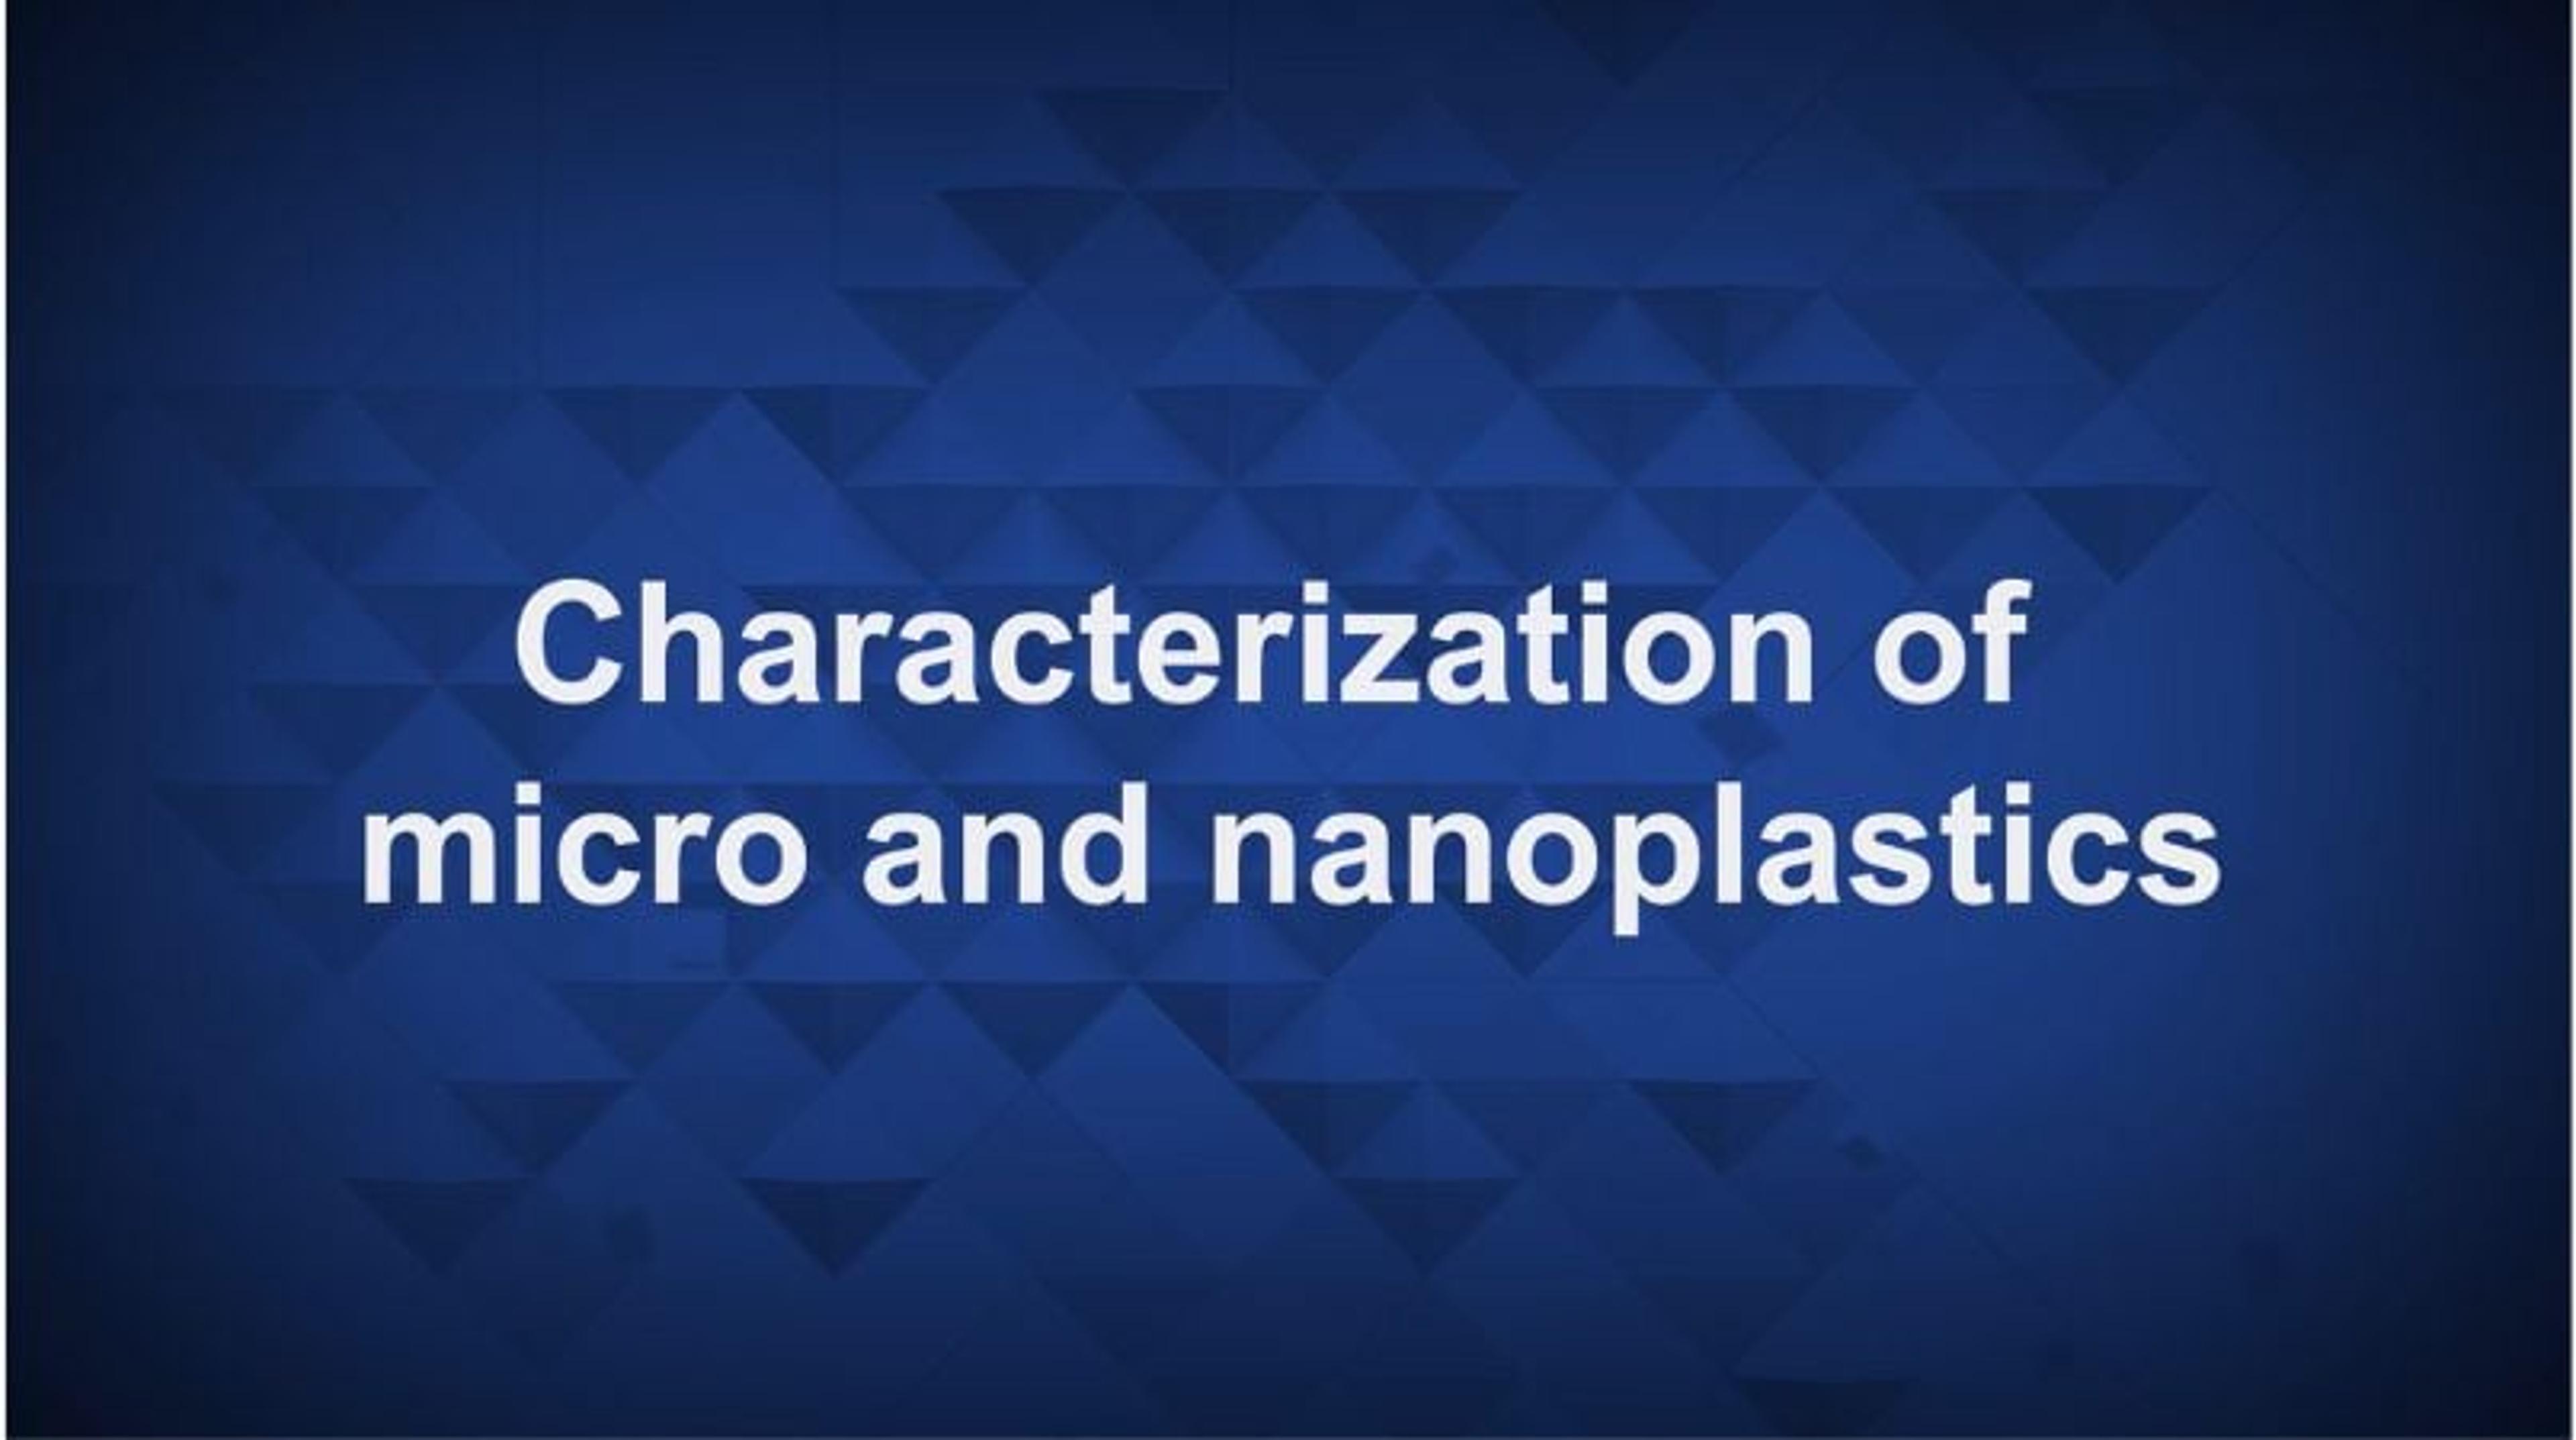 Characterization of micro and nanoplastics